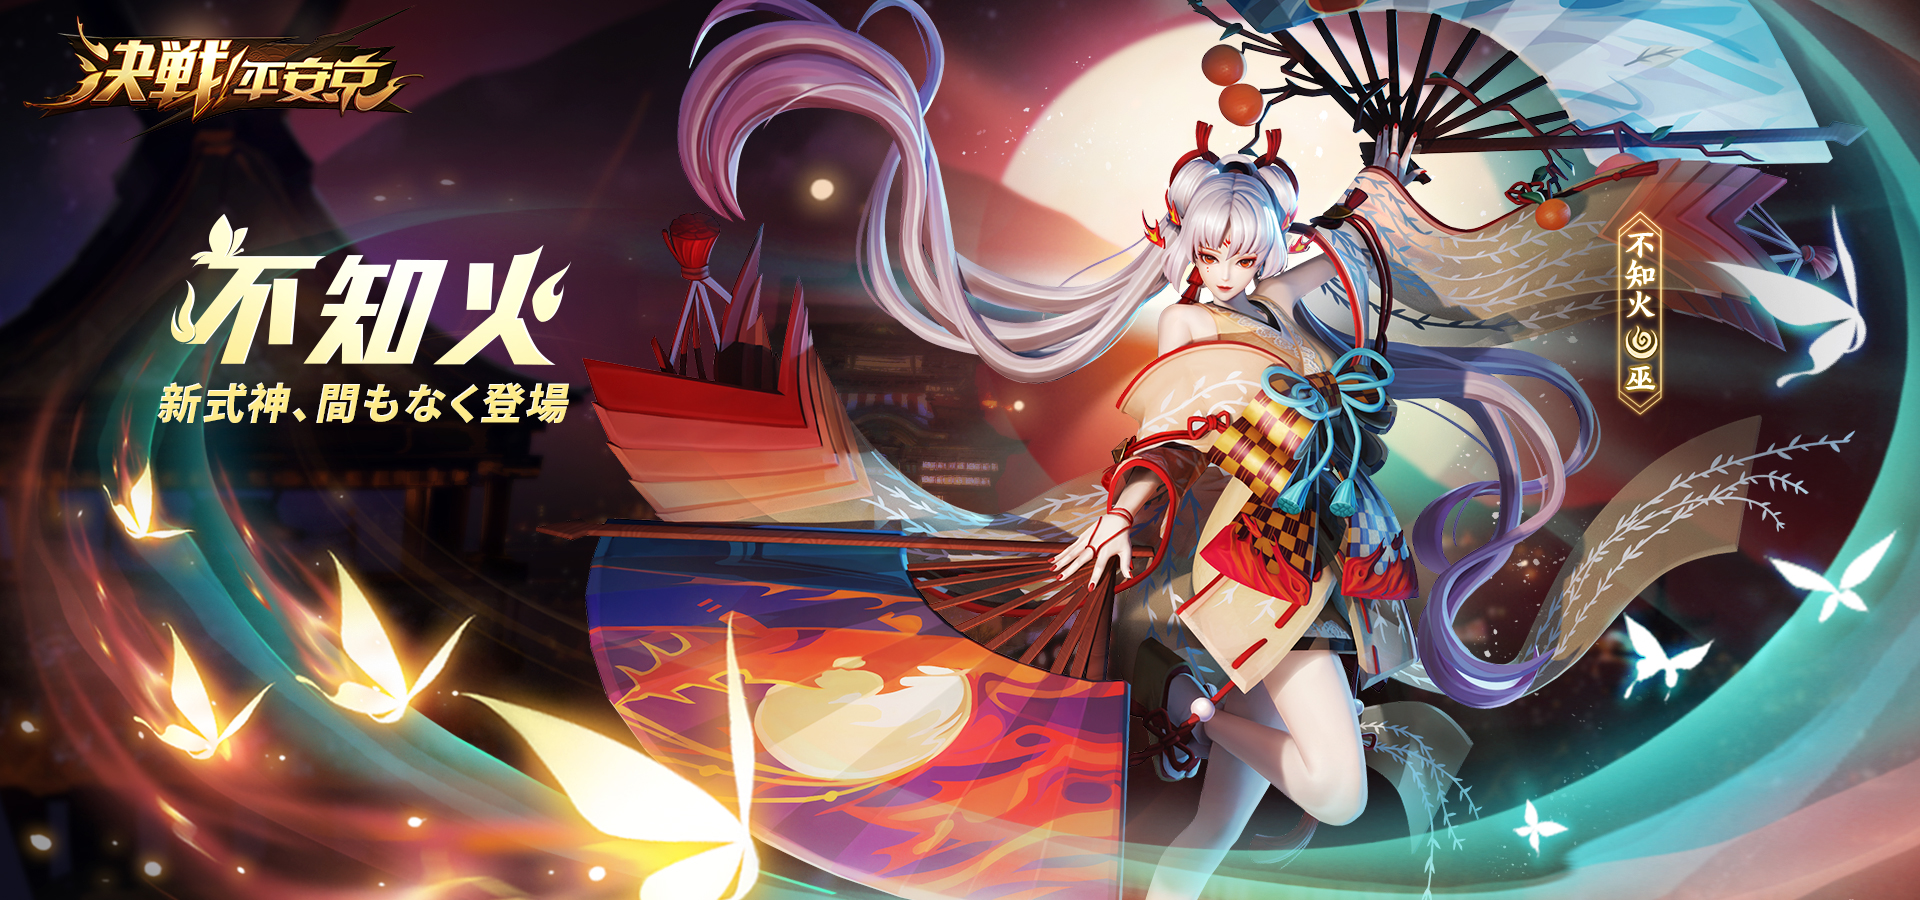 夏の花火大会開幕 くまモンコラボ正式に始動 Hong Kong Netease Interactive Entertainment Limited のプレスリリース